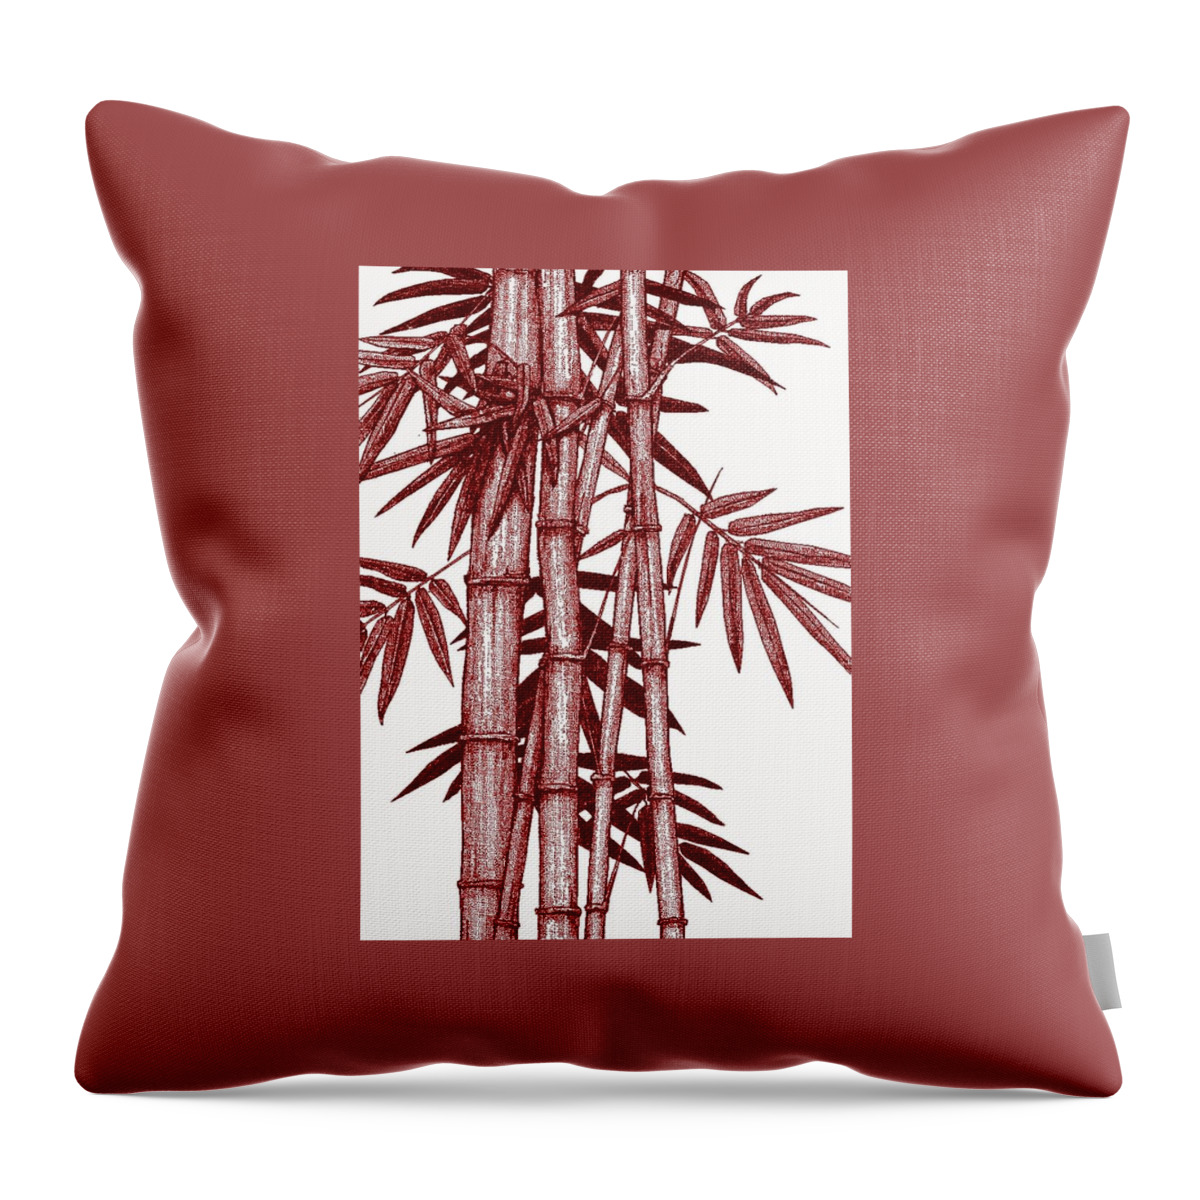 Hawaiian Bamboo Throw Pillow featuring the digital art Hawaiian Bamboo red by Stephen Jorgensen